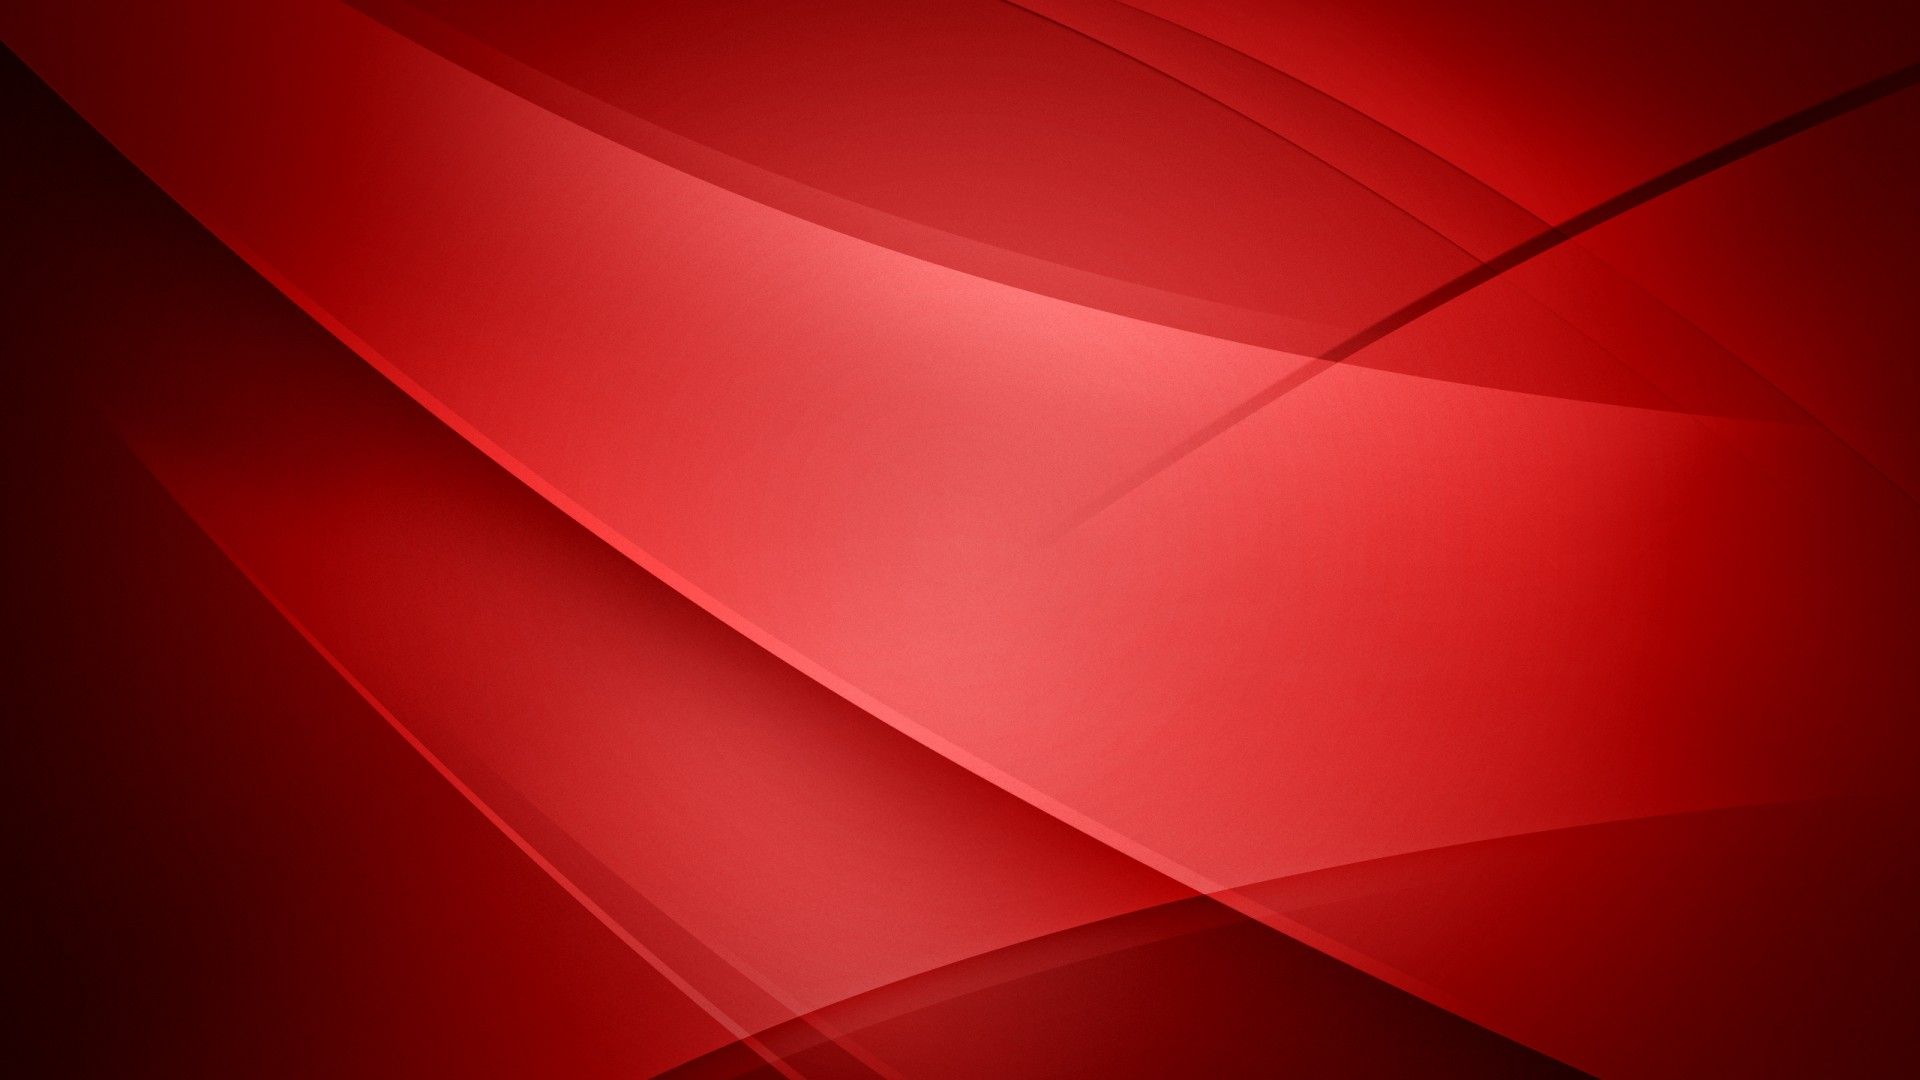 Red Wallpapers Hd Resolution> Flip Wallpapers> Descargar gratis